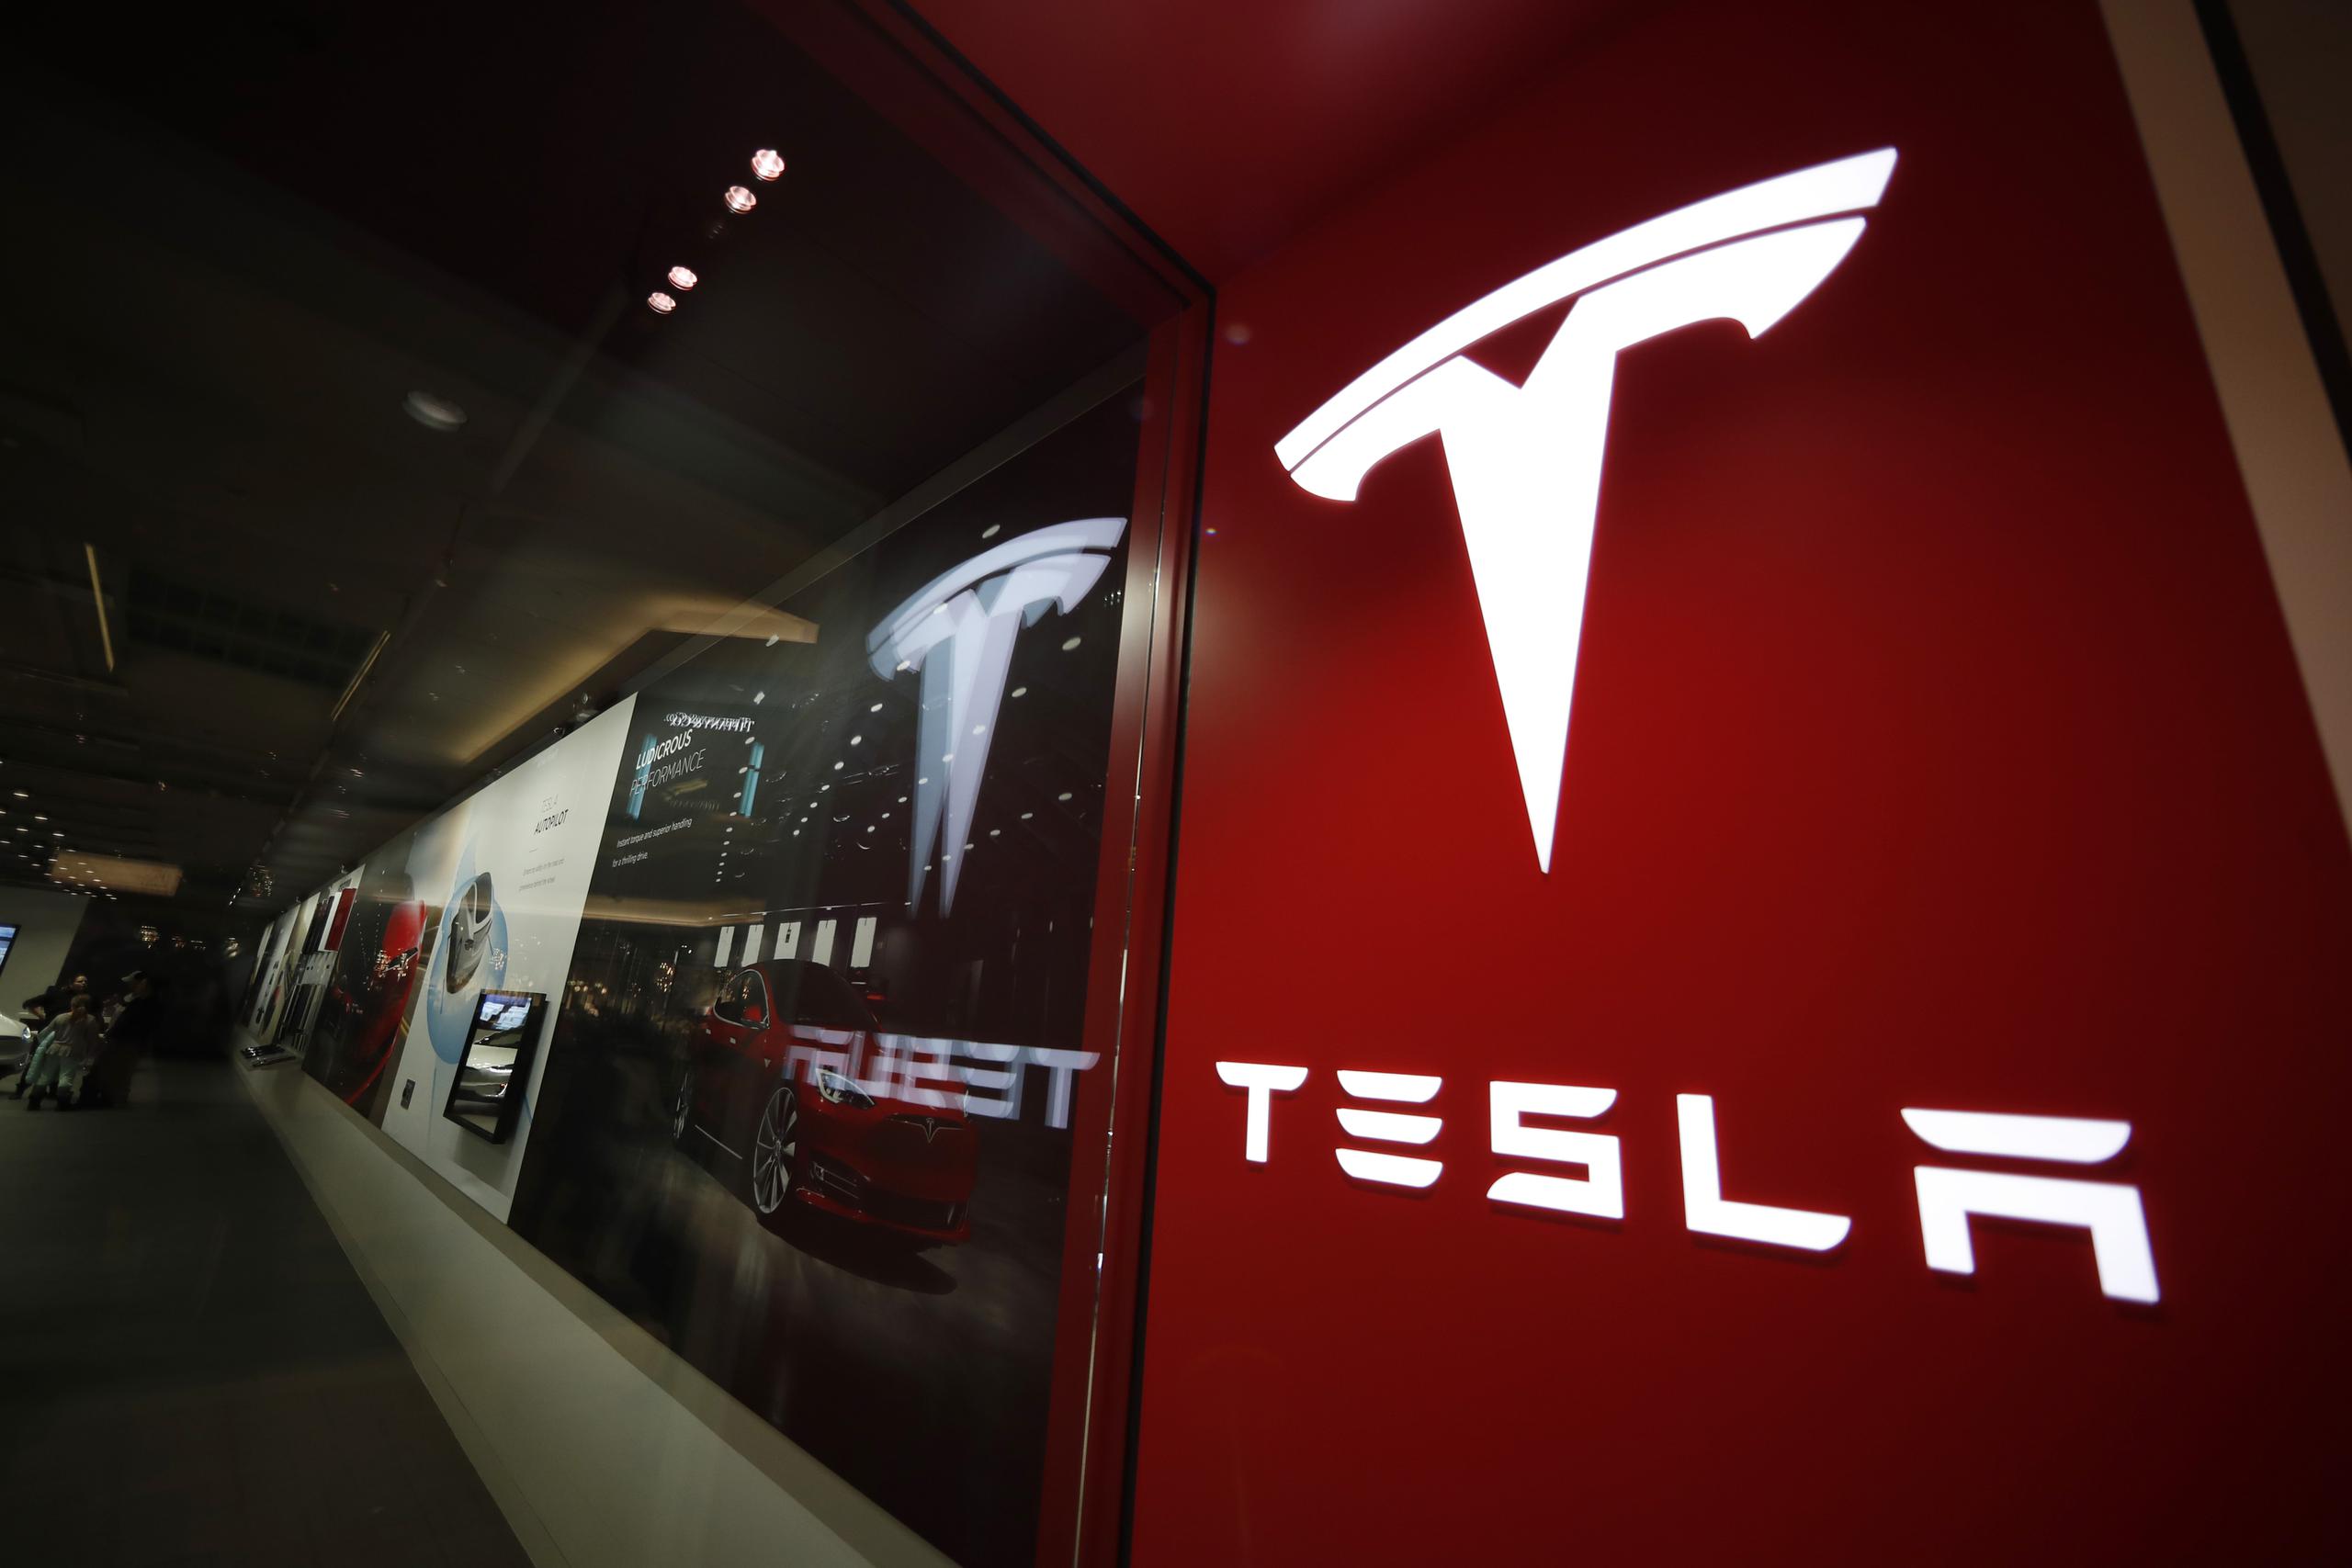 Tesla enfrenta varias demandas relacionadas con su tecnología Autopilot que llegarán a juicio este año, y este caso parece ser la primera vez que la compañía llega a un acuerdo.